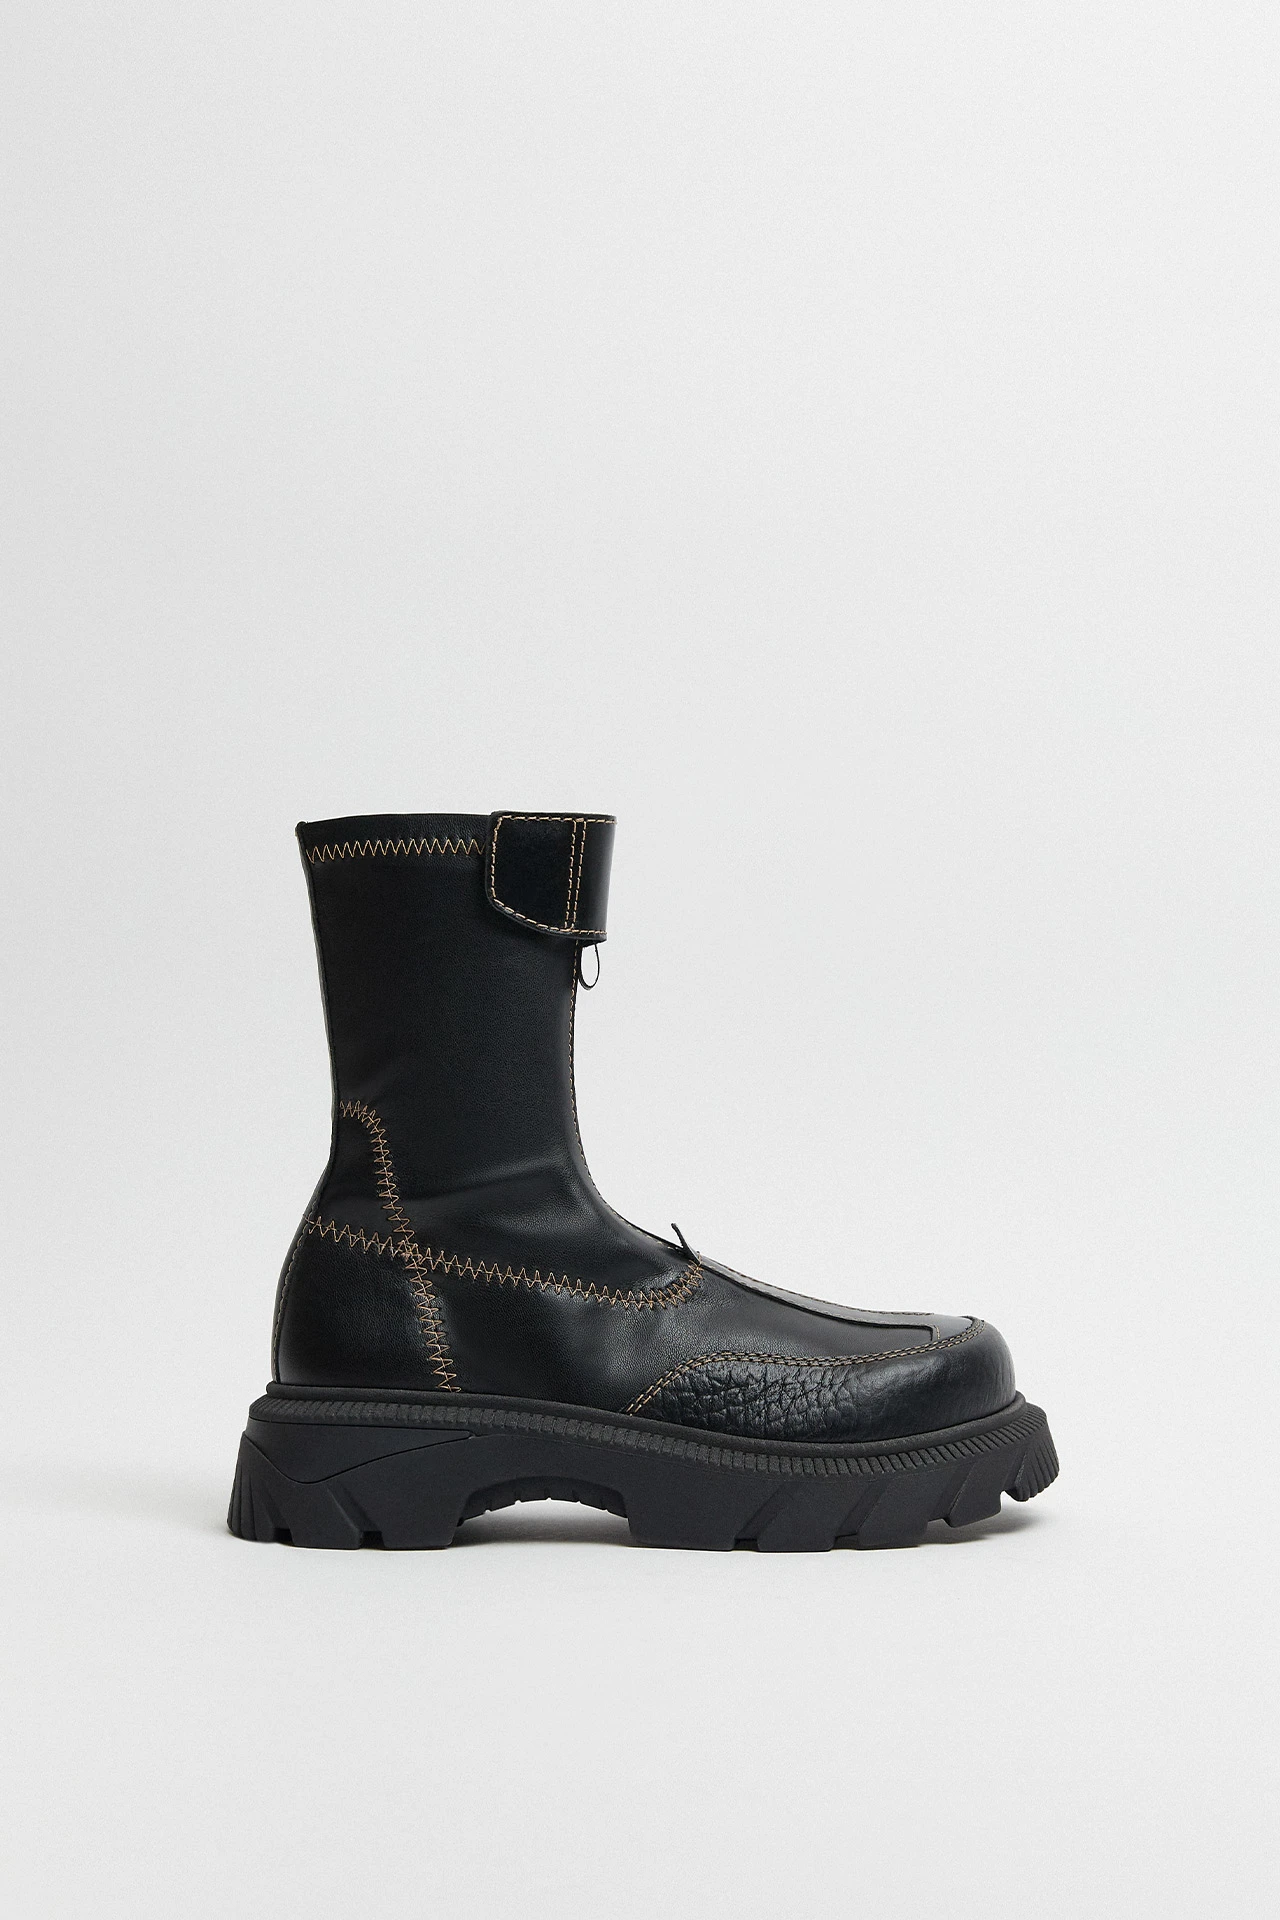 E8-danica-black-beige-ankle-boots-01